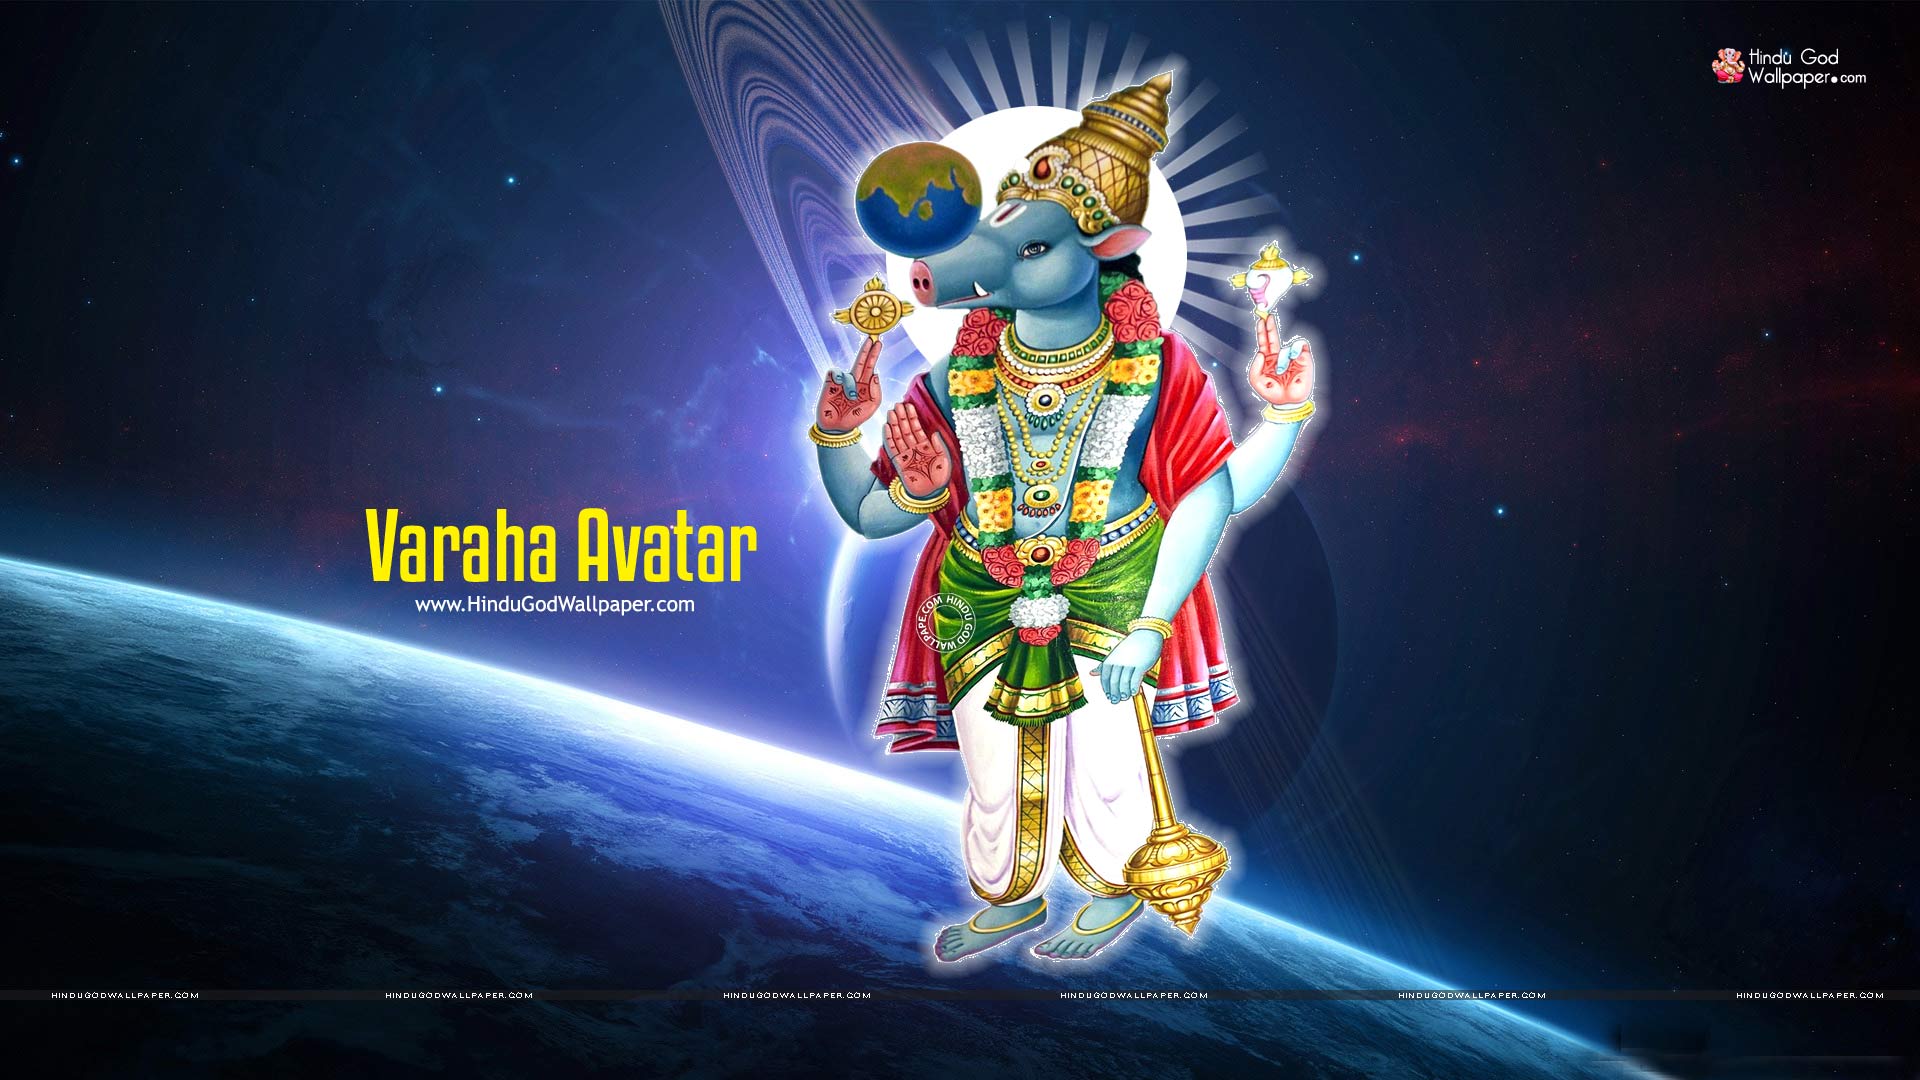 Kalki Avatar Wallpapers HD Vishnu Images & Photos Free Download